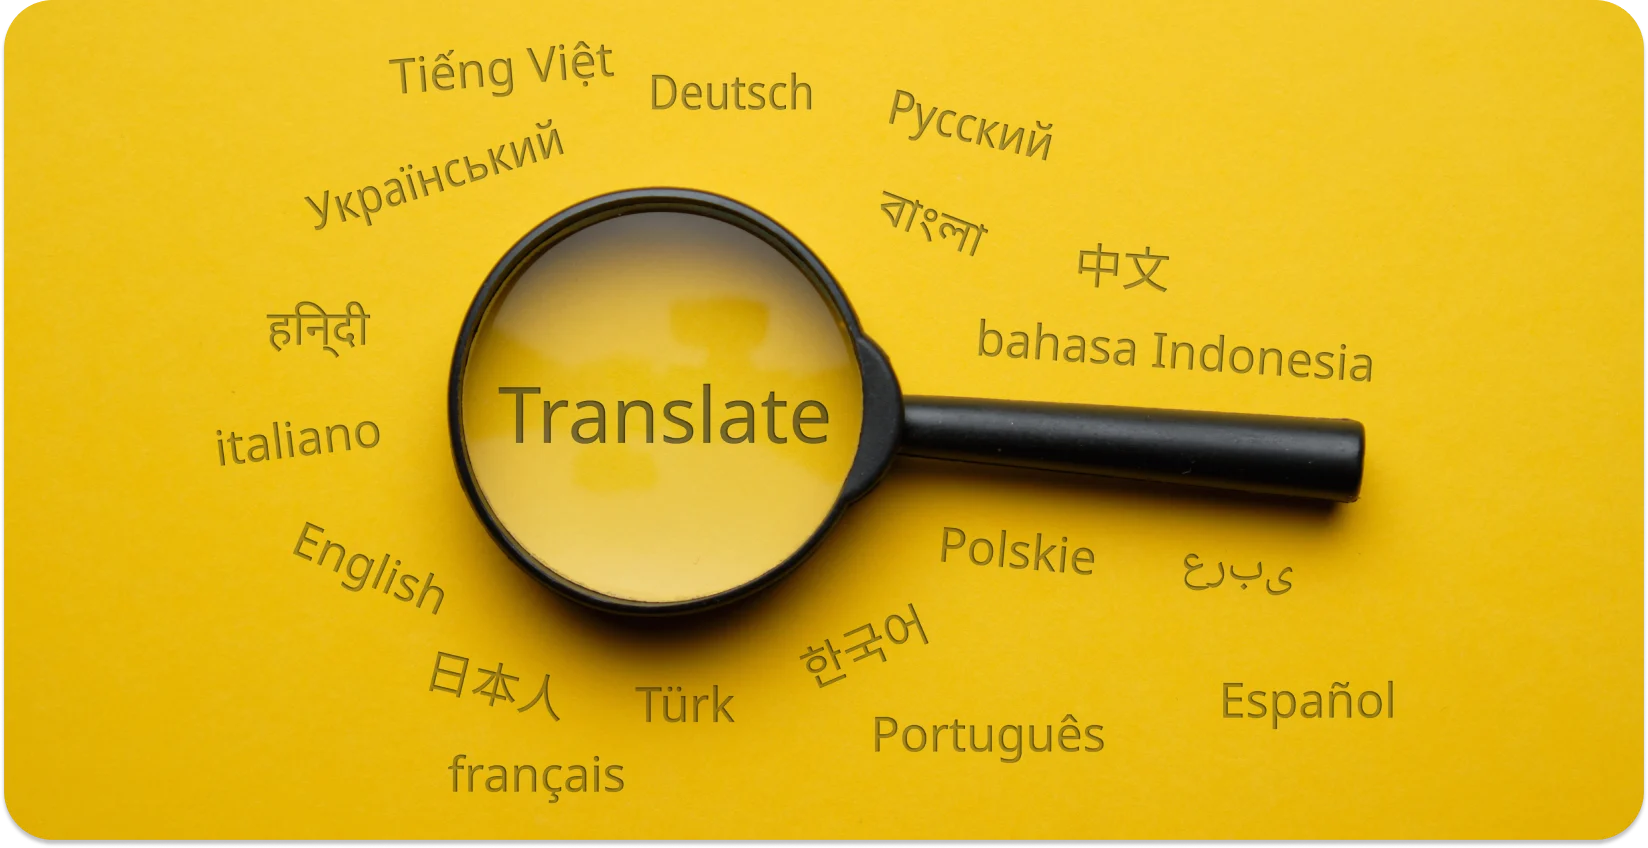 Lupa destacando 'Traduzir' em meio a várias línguas, simbolizando a conversão linguística.